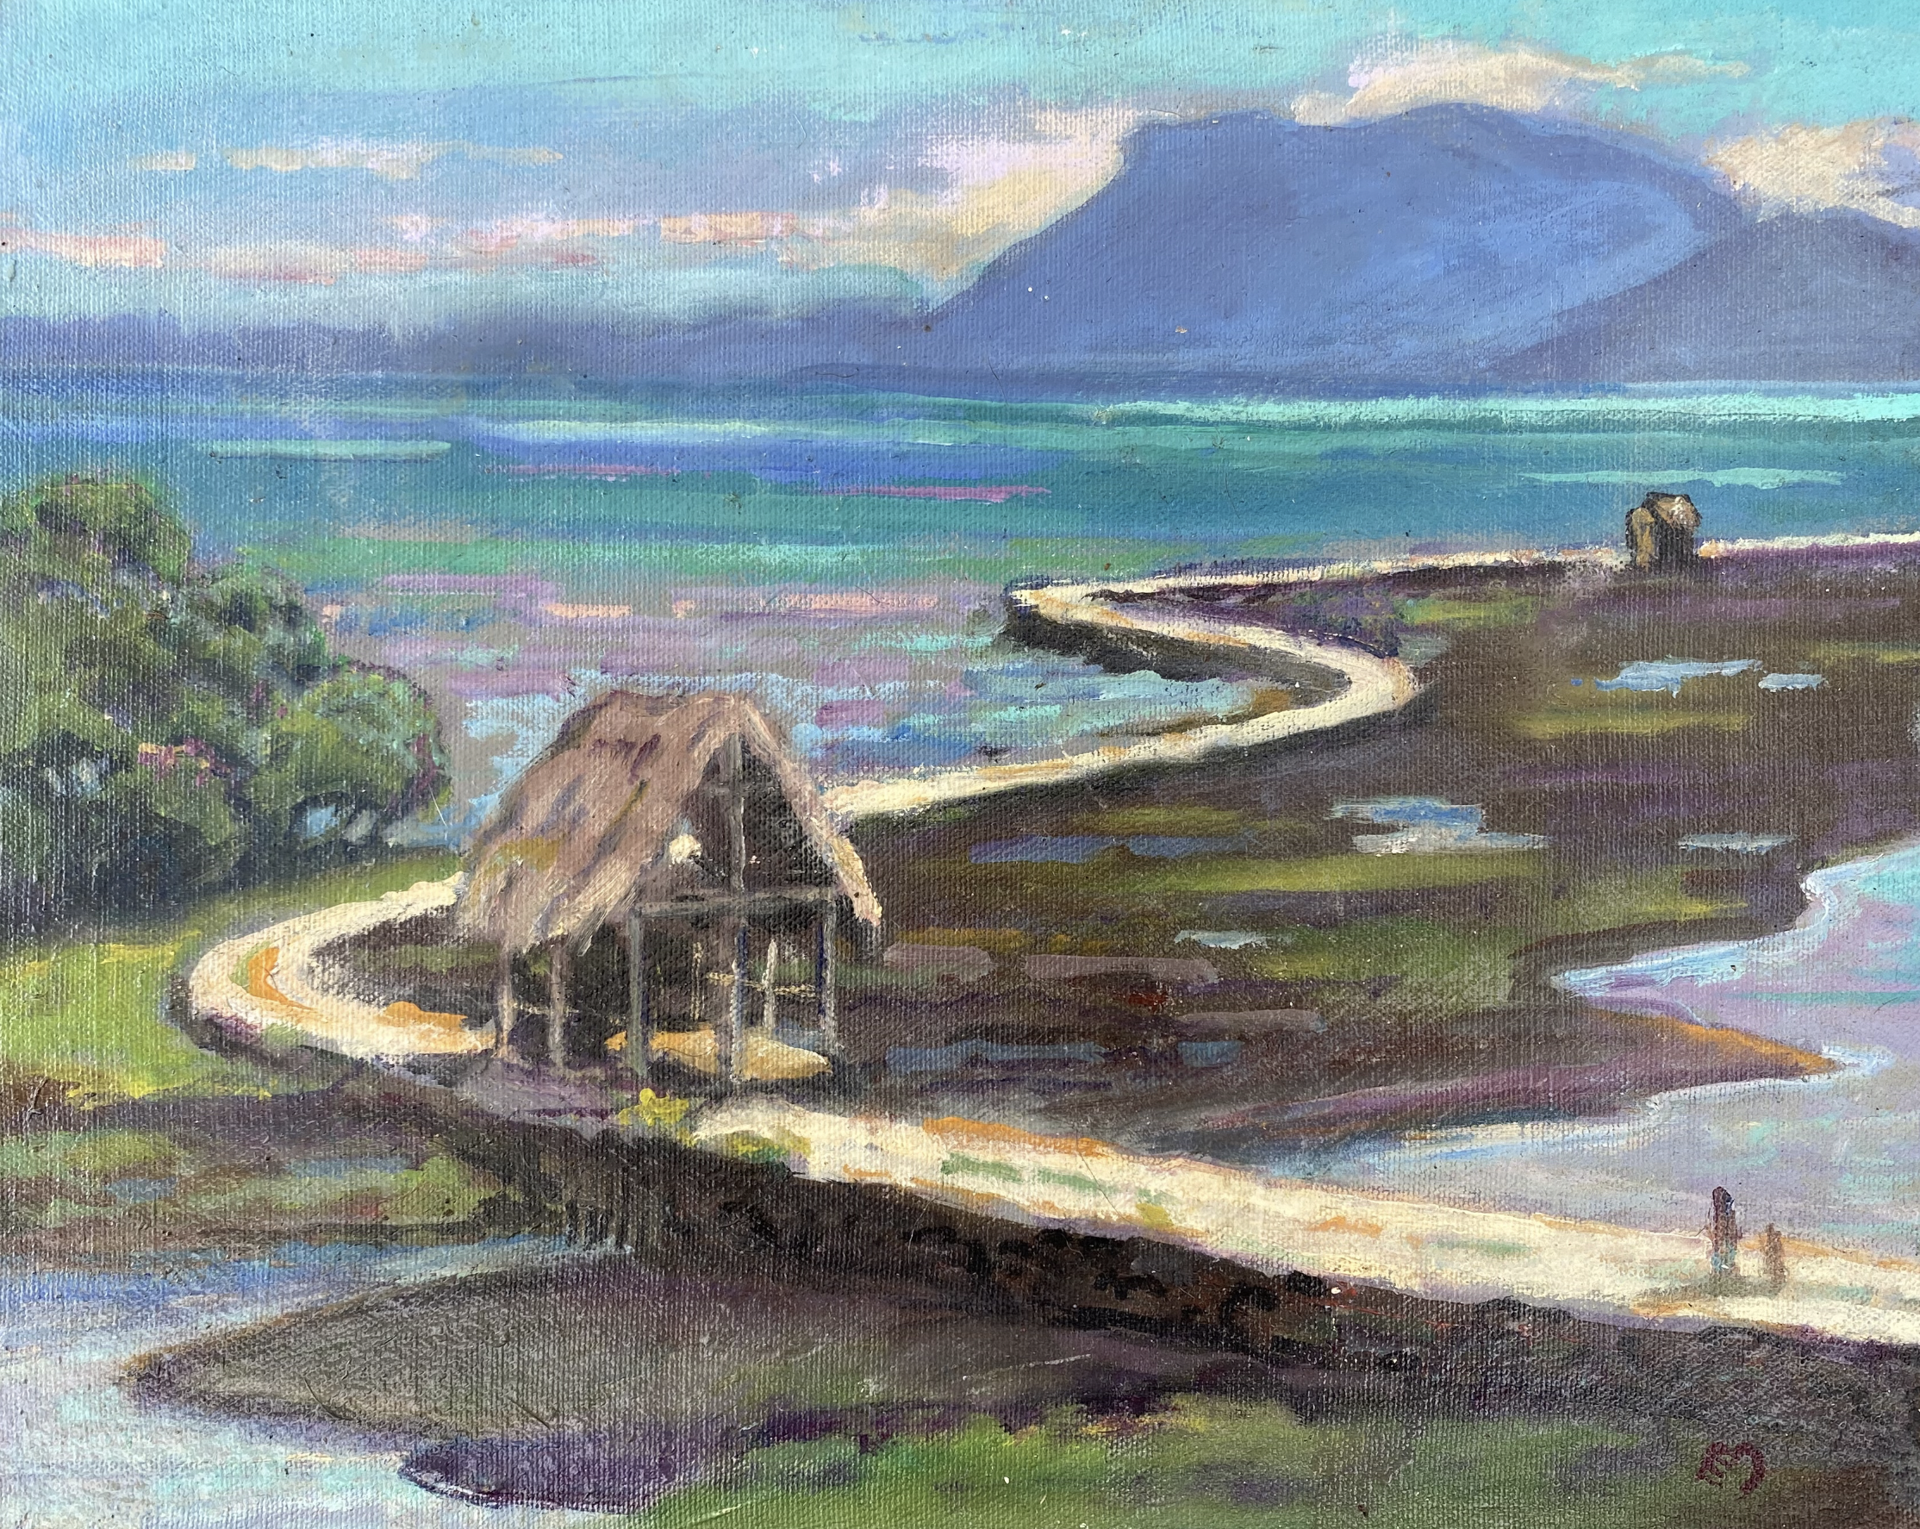 Fish Pond, Kāneʻohe by Dennis Morton